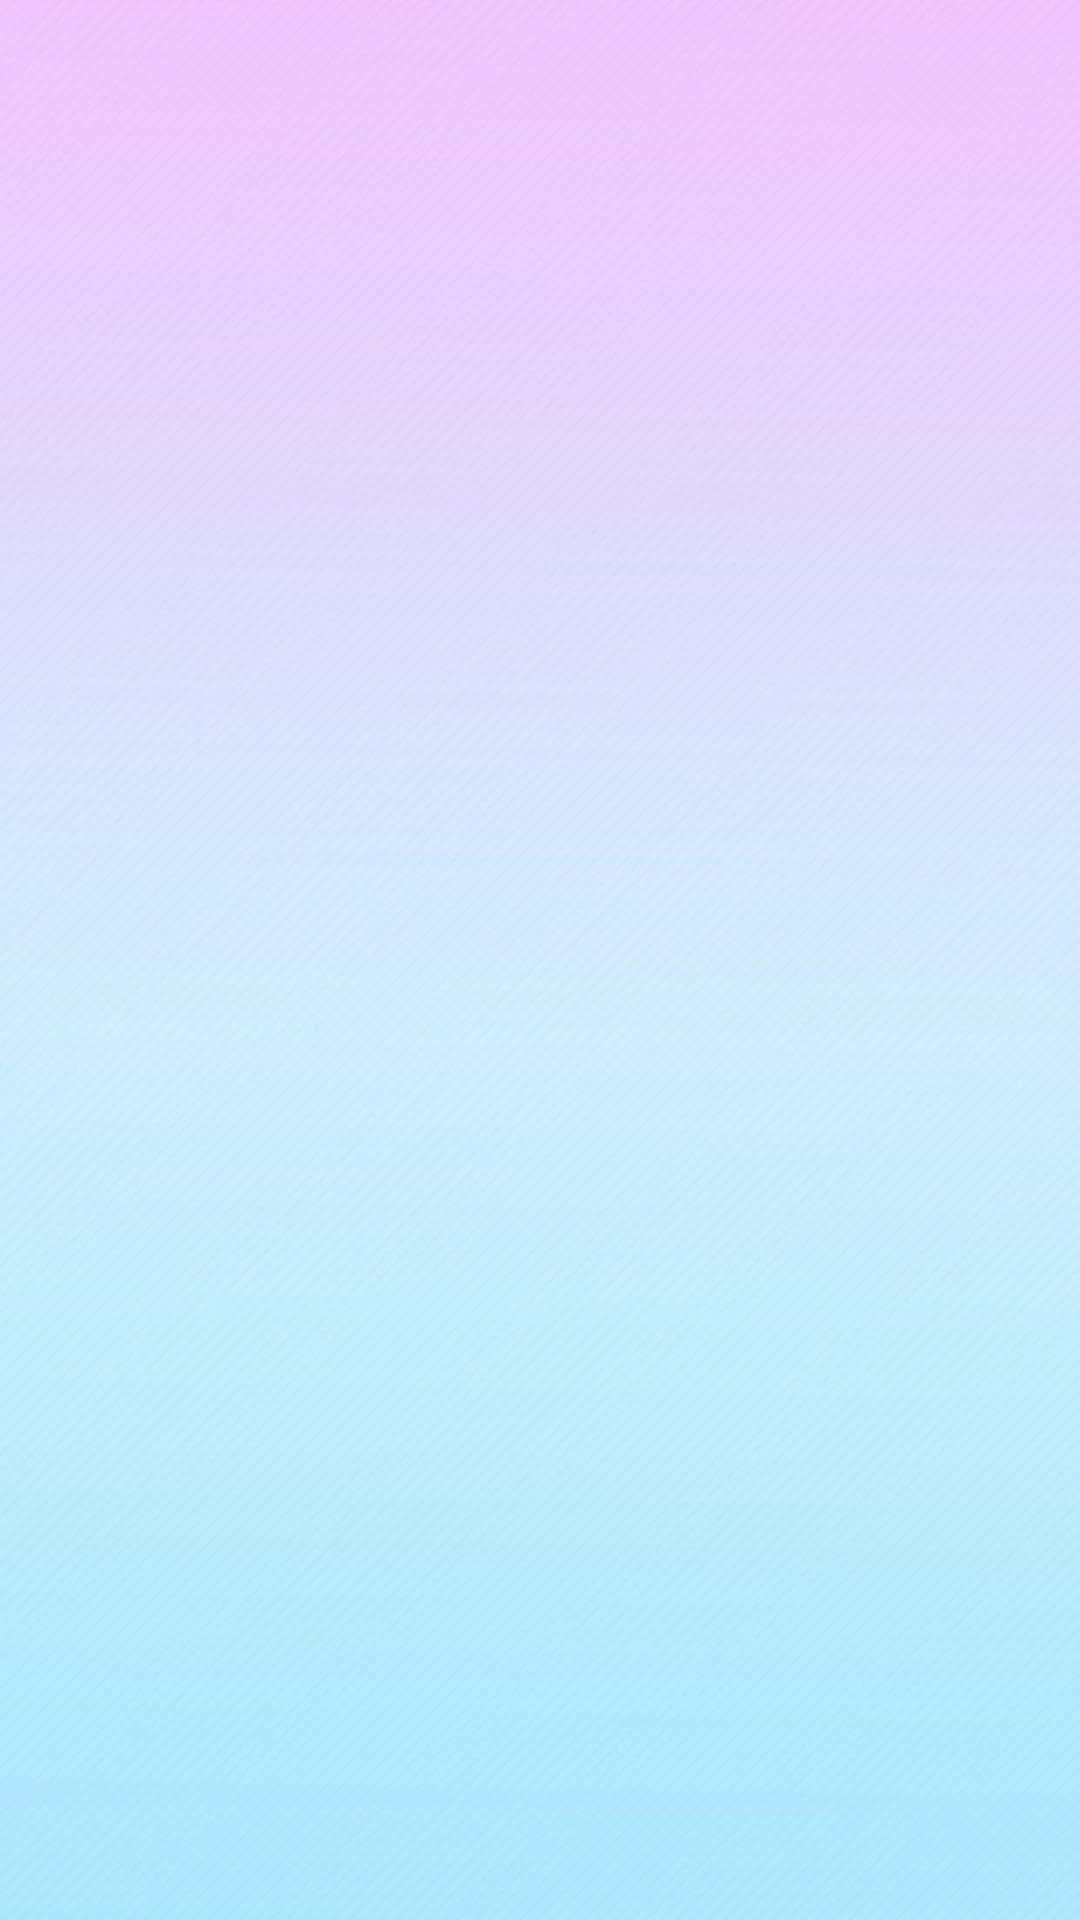 Blauerverlaufshintergrund Von Hellrosa Zu Hellblauem Farbverlauf.